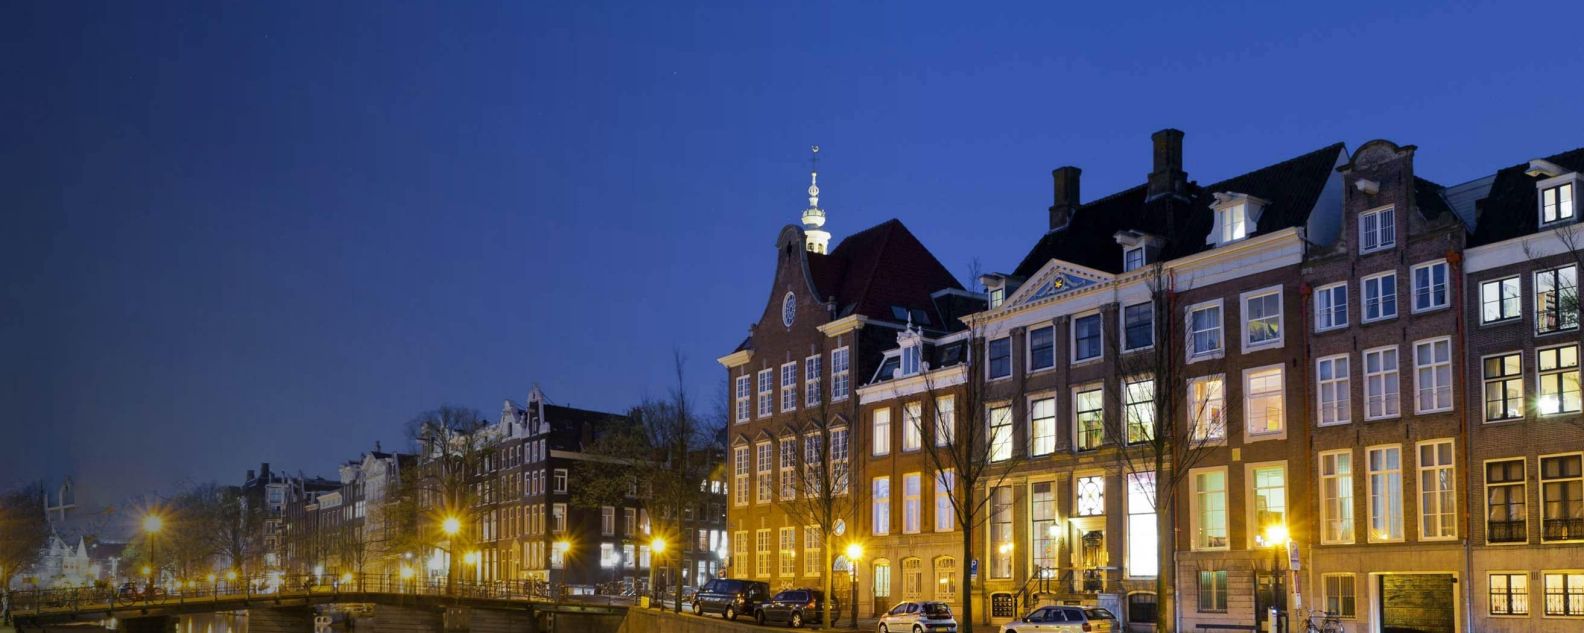 foto de prédios tradicionais em Amsterdã, Holanda